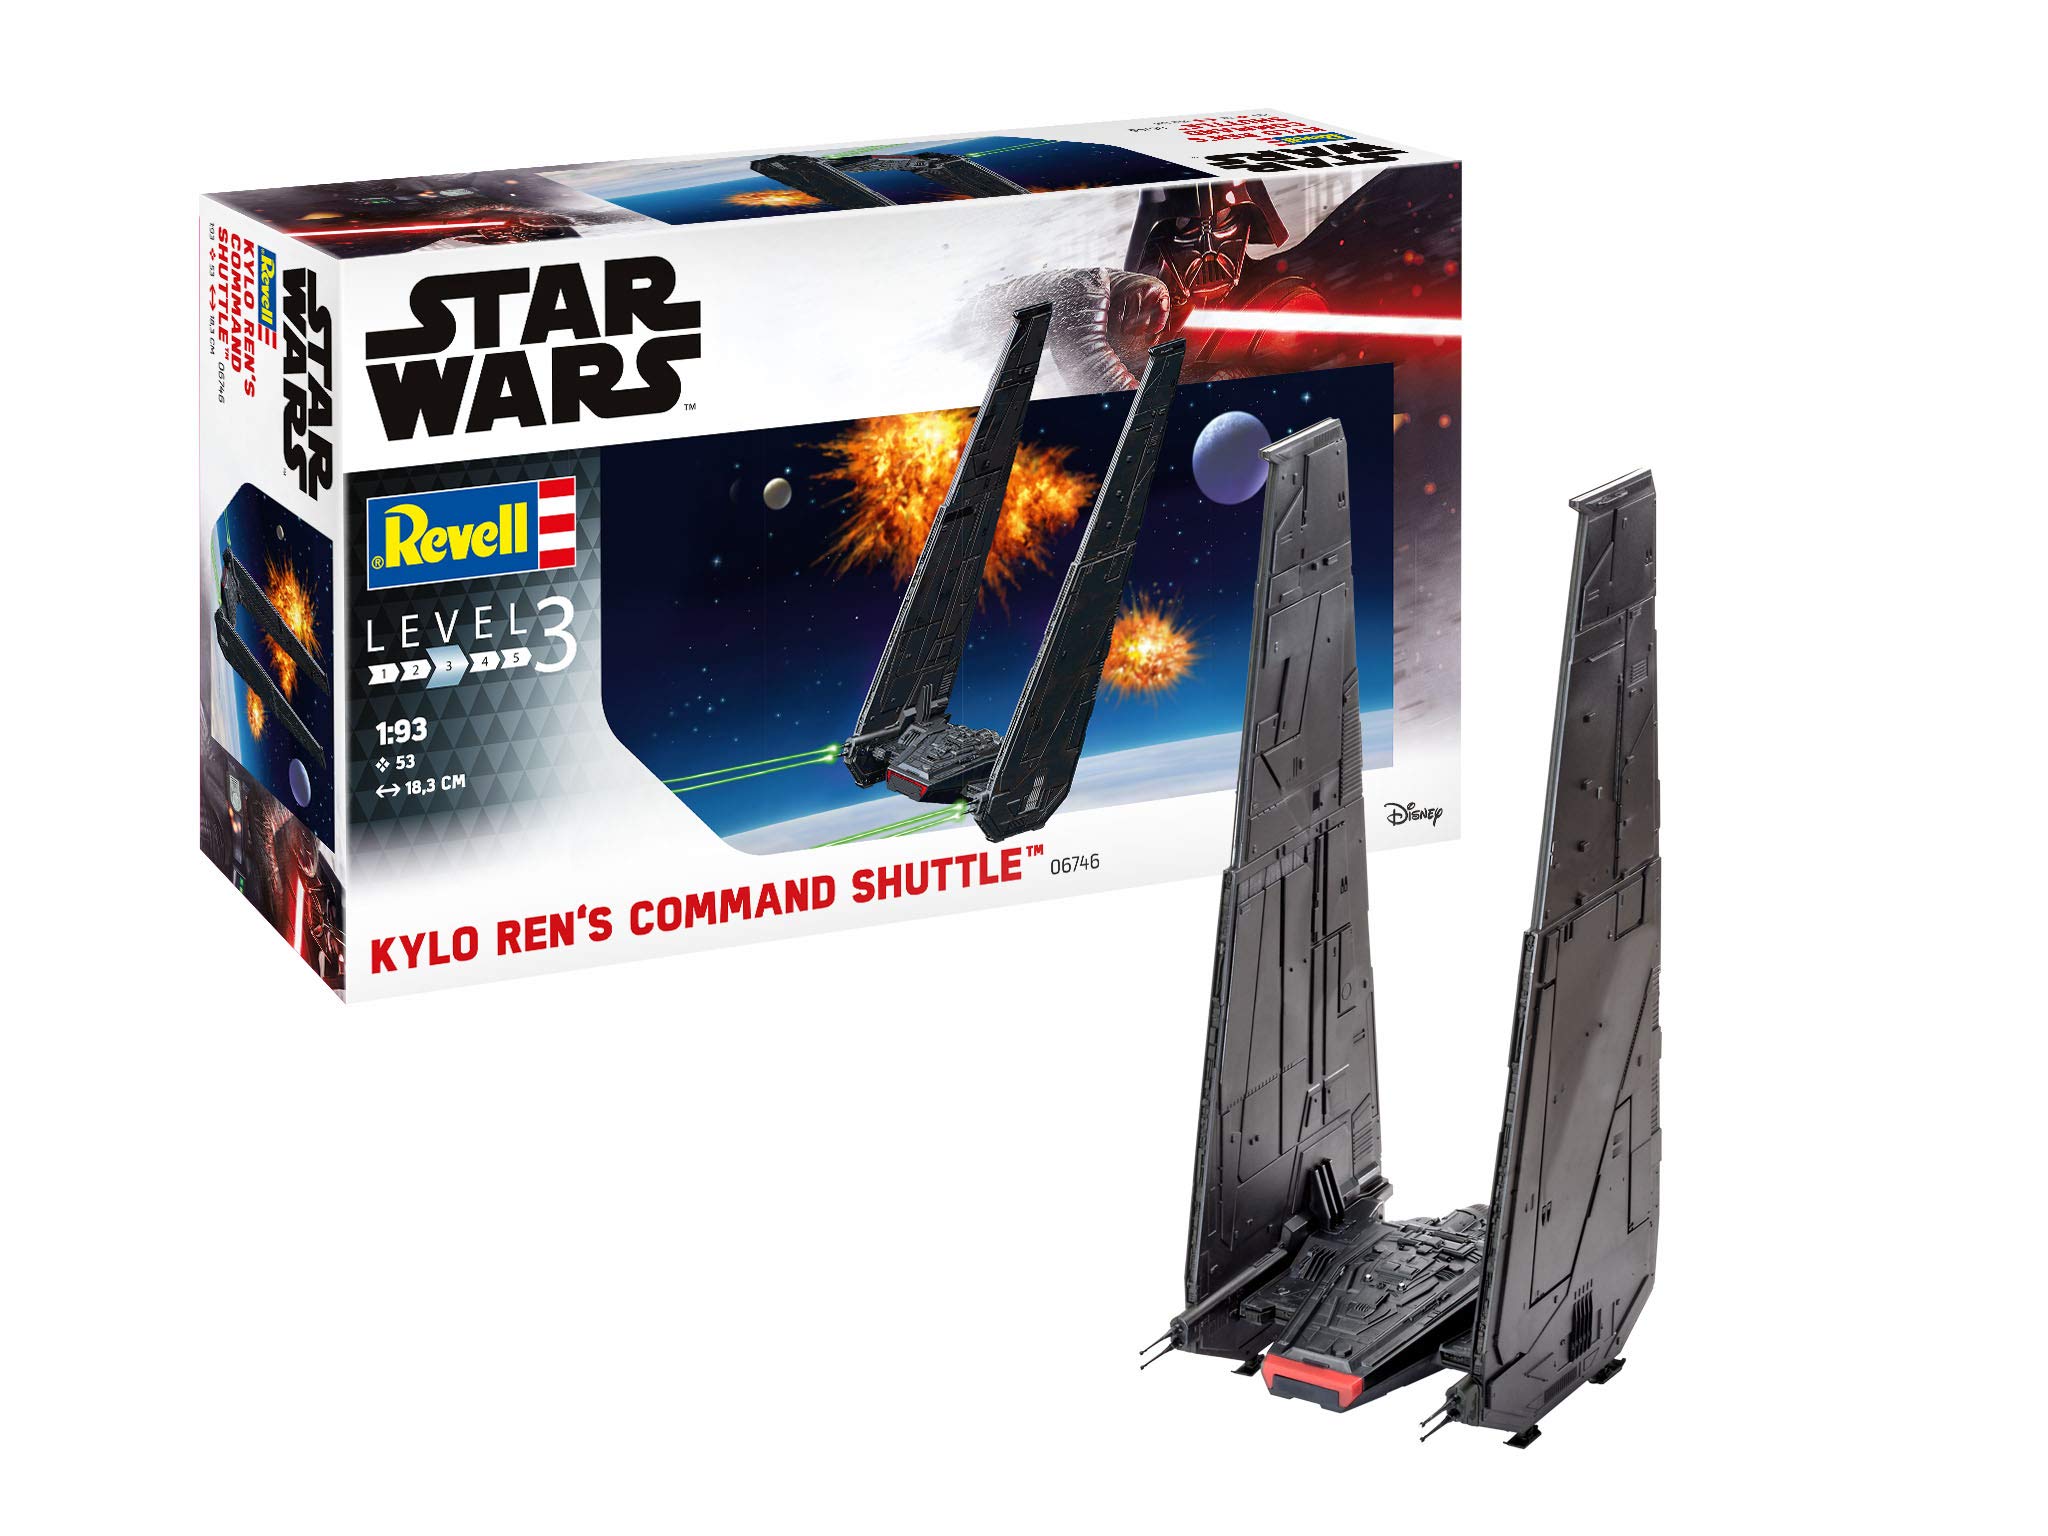 Revell REV-06746 Disney Star Wars Kylo Ren's Command Shuttle Ren Toys, Mehrfarbig, 1/93